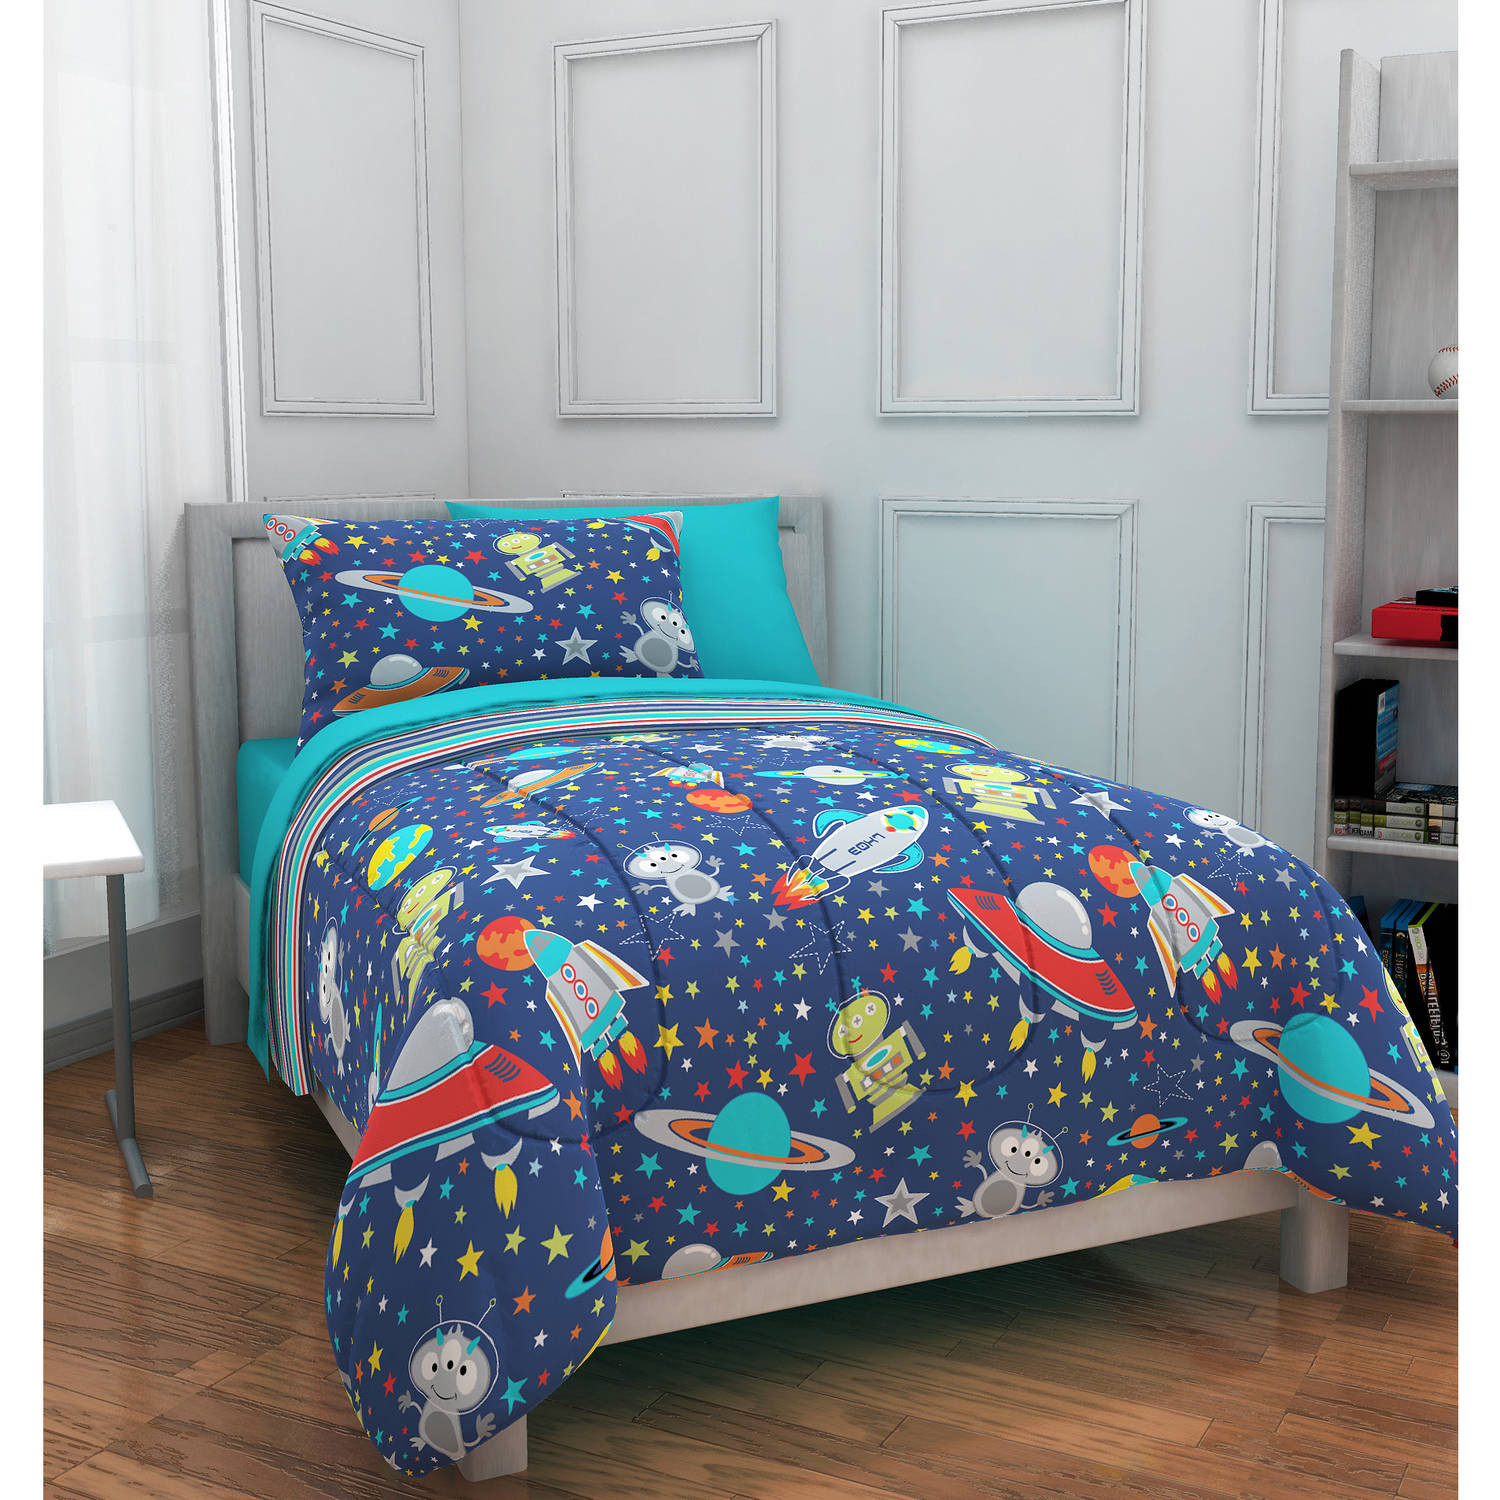 Kids Bedroom Sets Walmart
 Mainstays Kids Outer Space Bed in a Bag Bedding Set